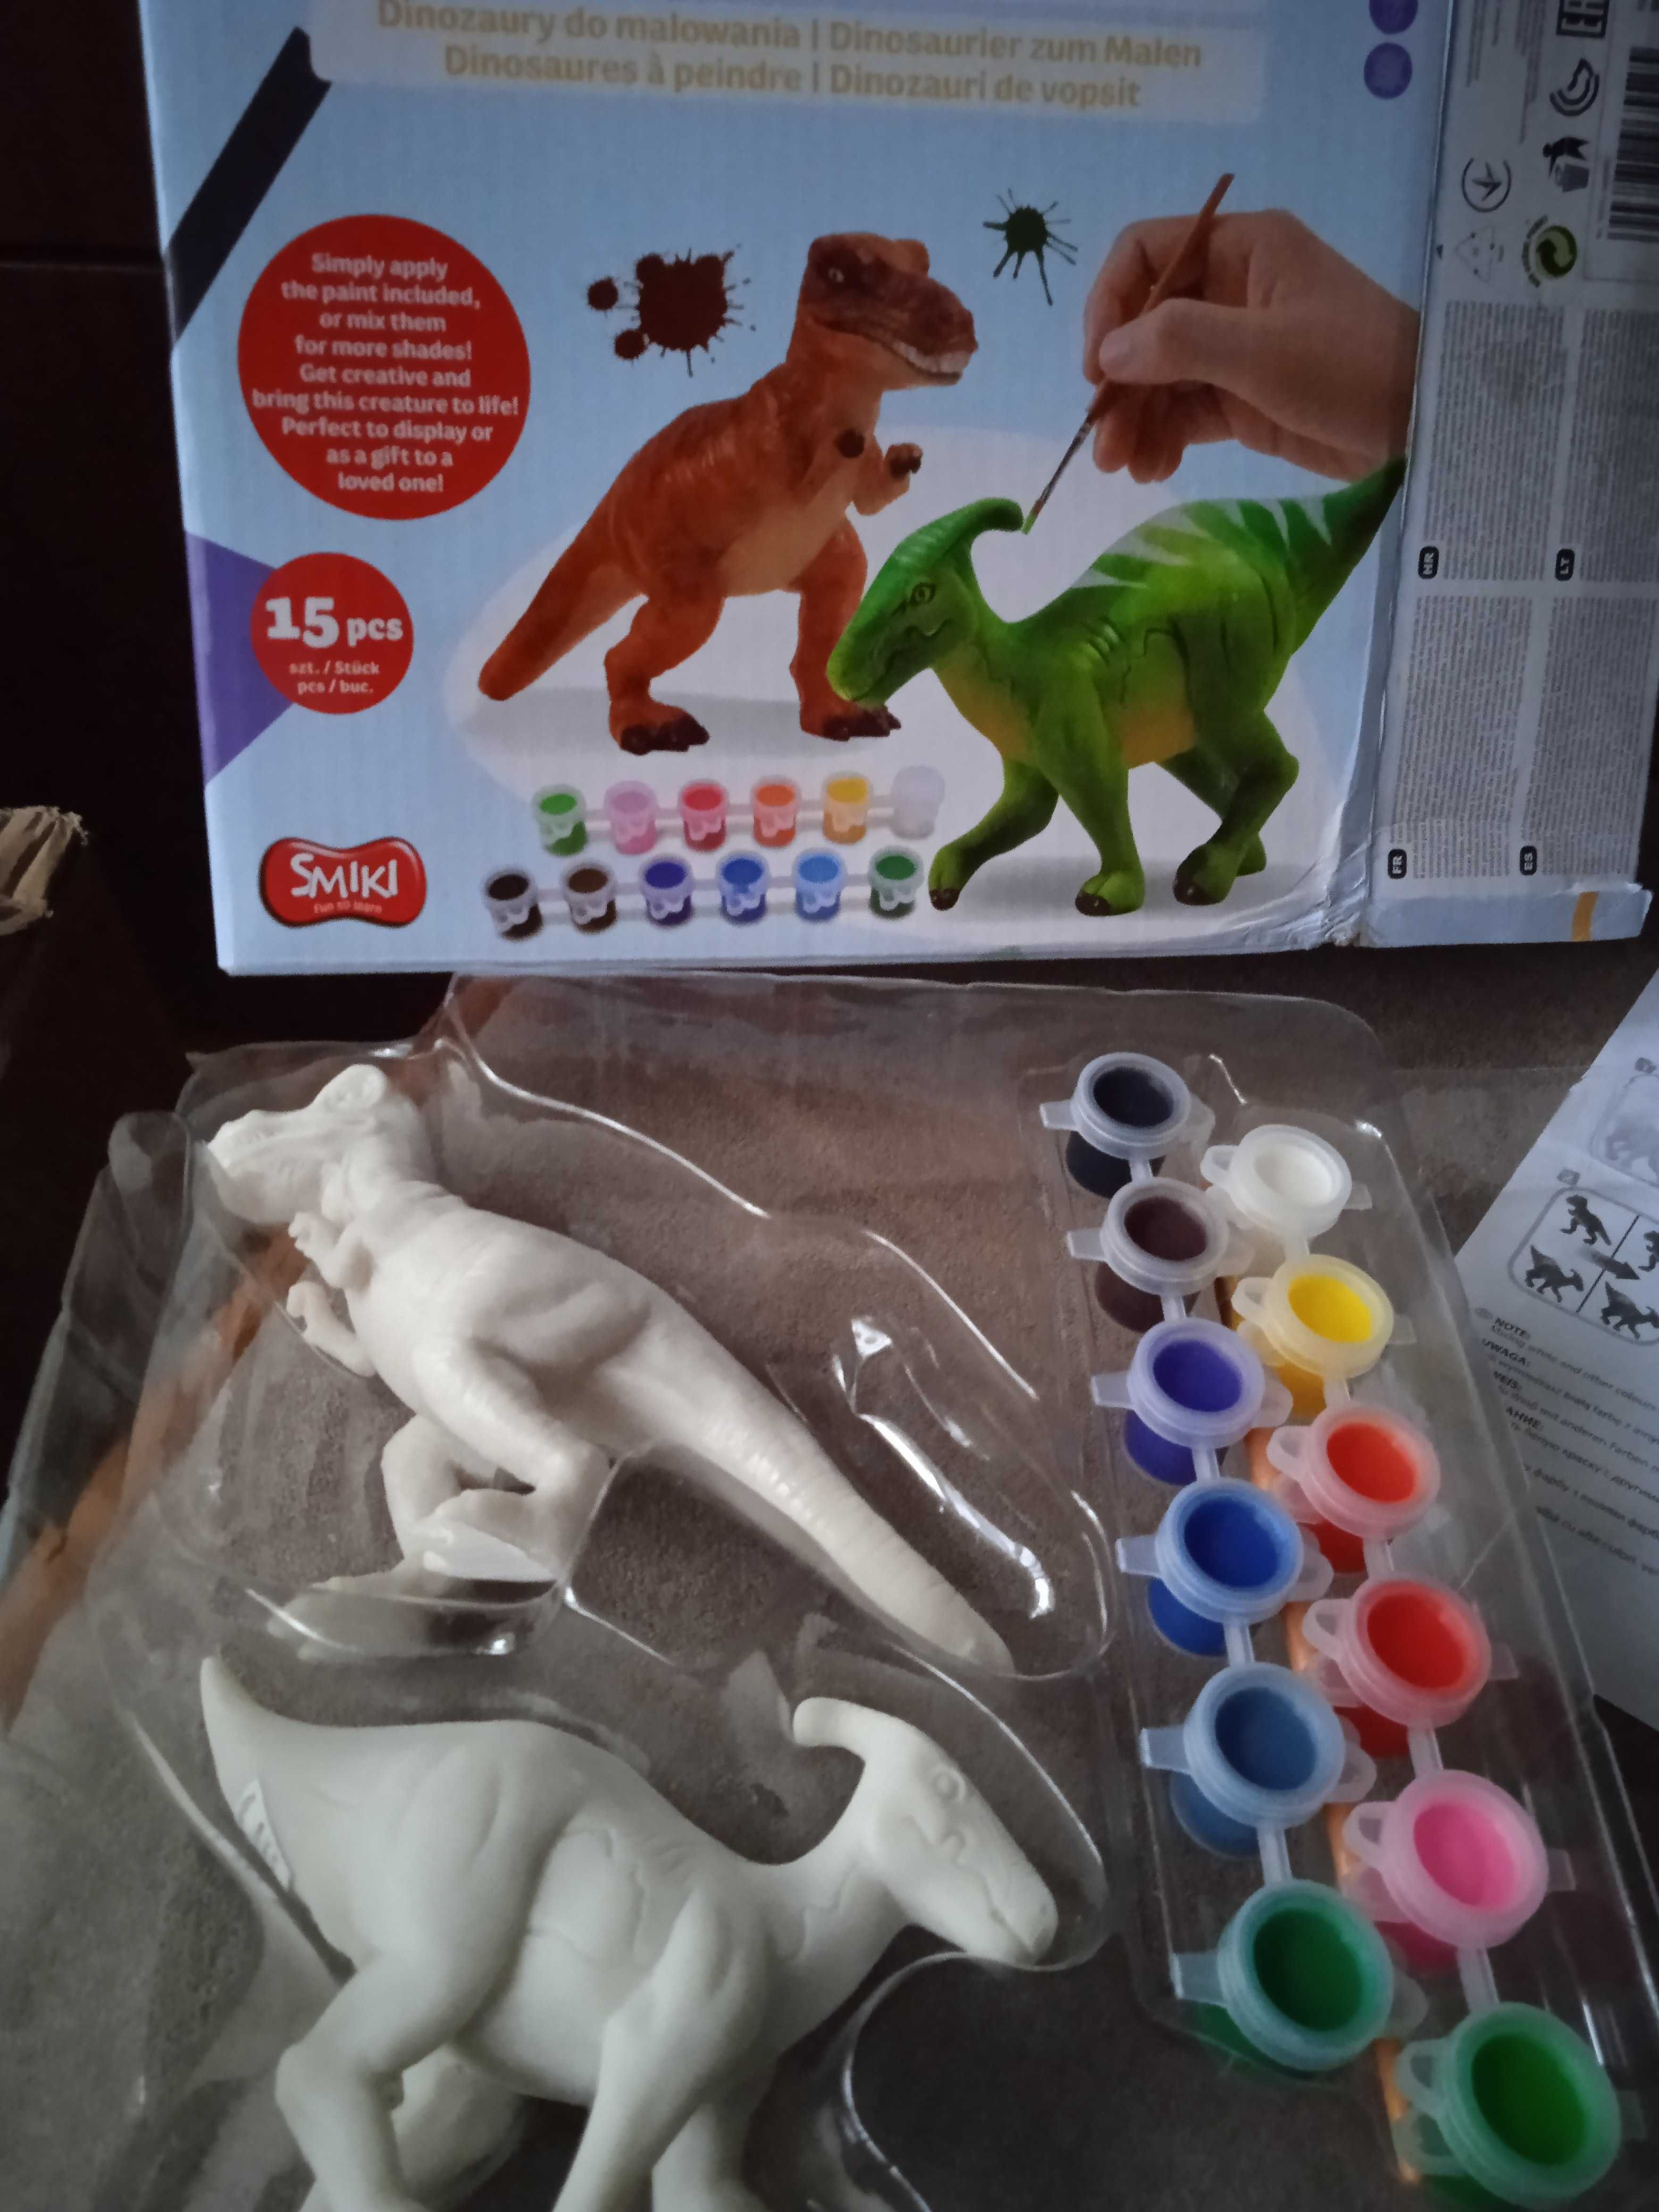 Смики фигурки динозавров с красками креативный набор